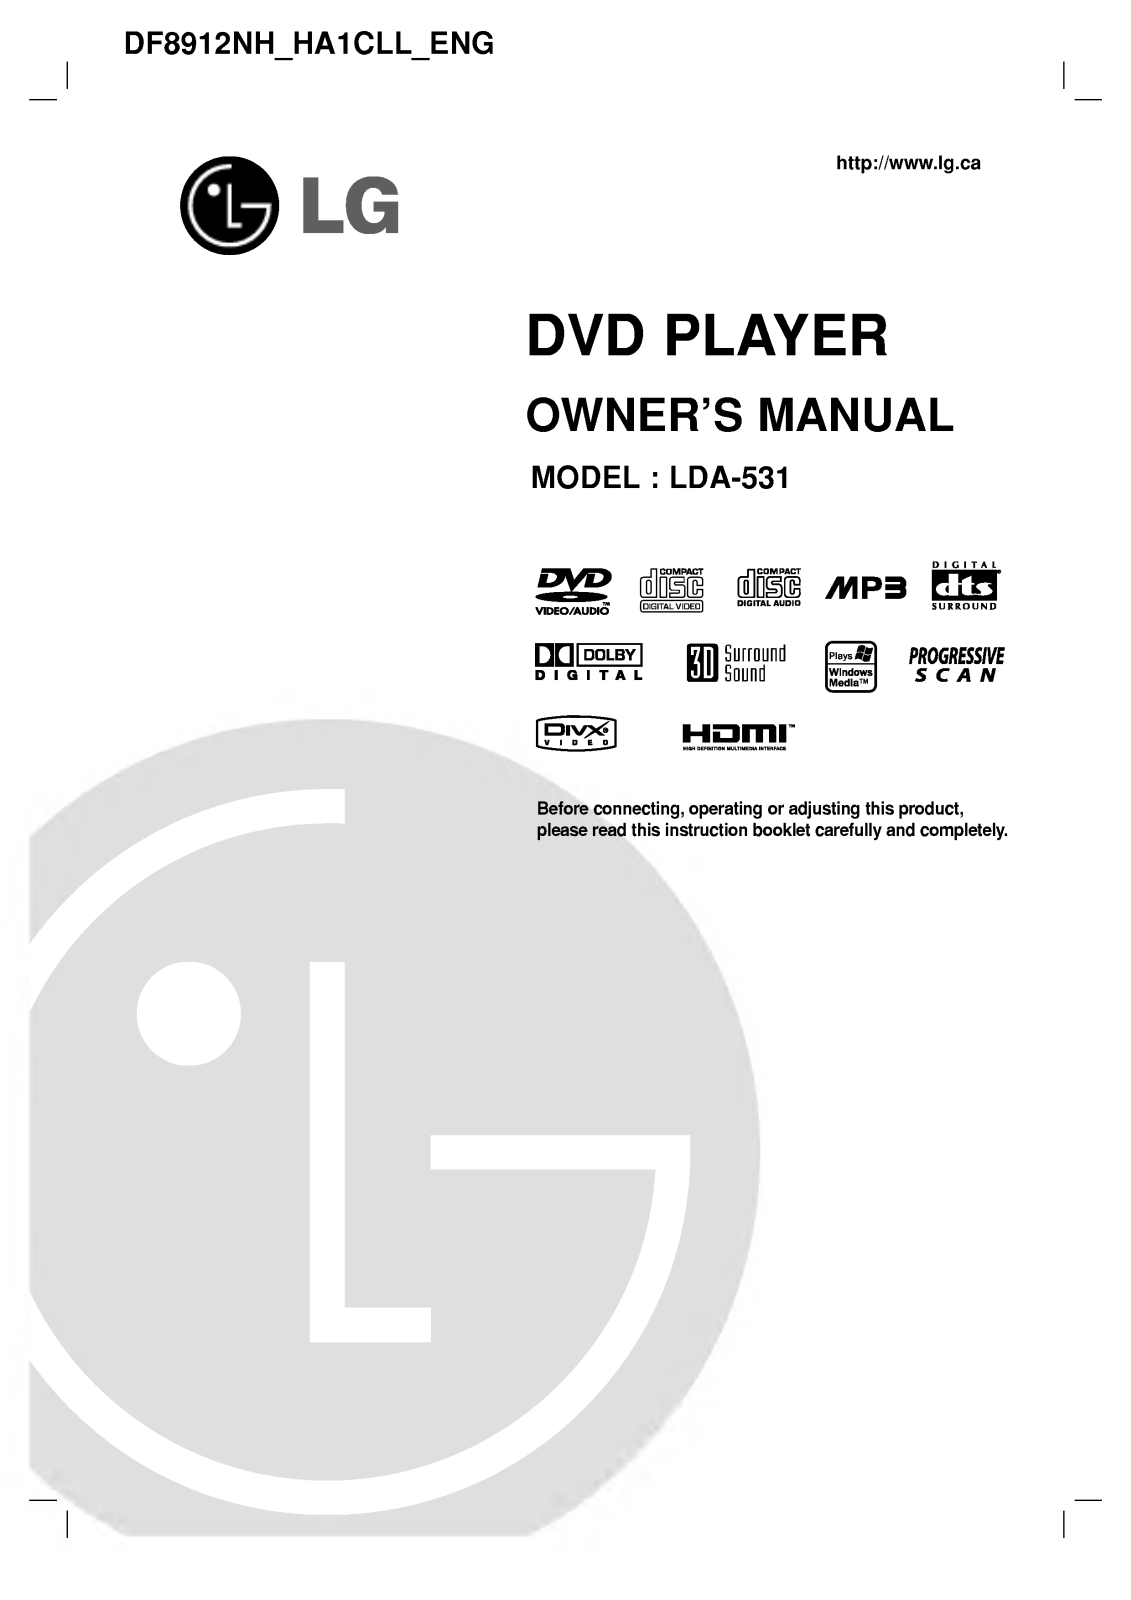 LG DF8912NH Owner’s Manual